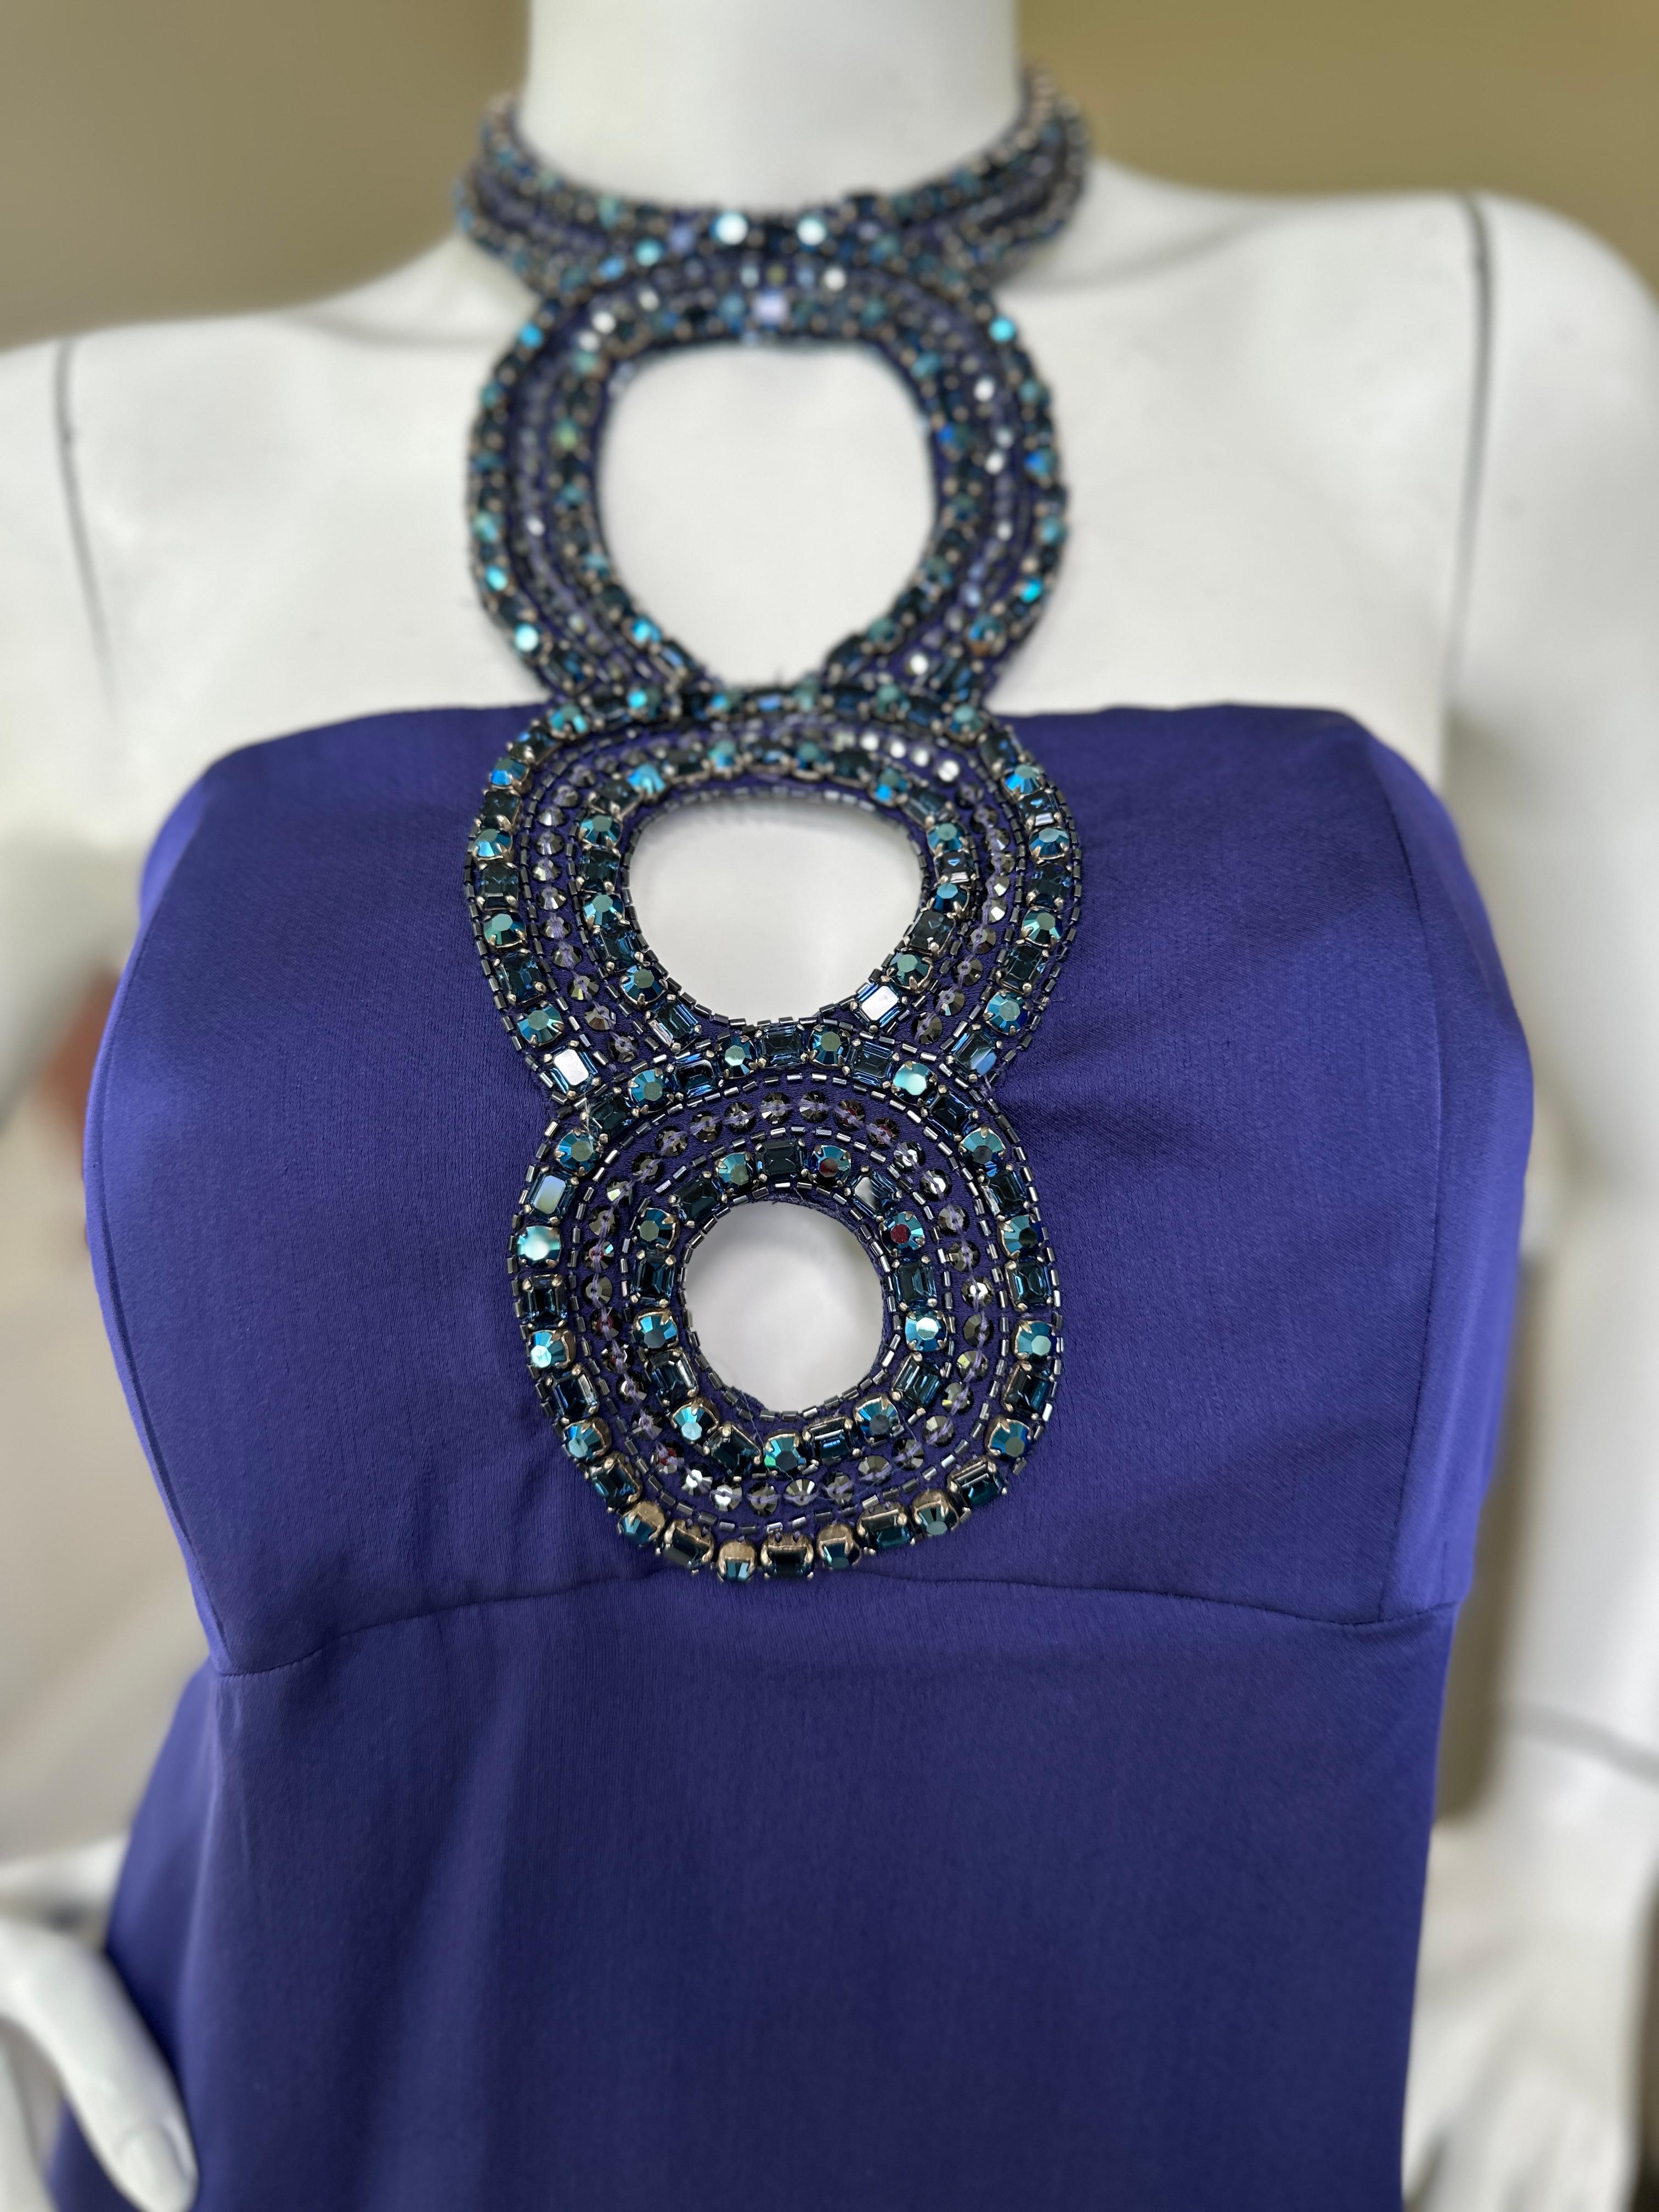 Robe de cocktail en soie bleue Vintage By avec trou de serrure orné de bijoux.

Taille 42
 Buste 34